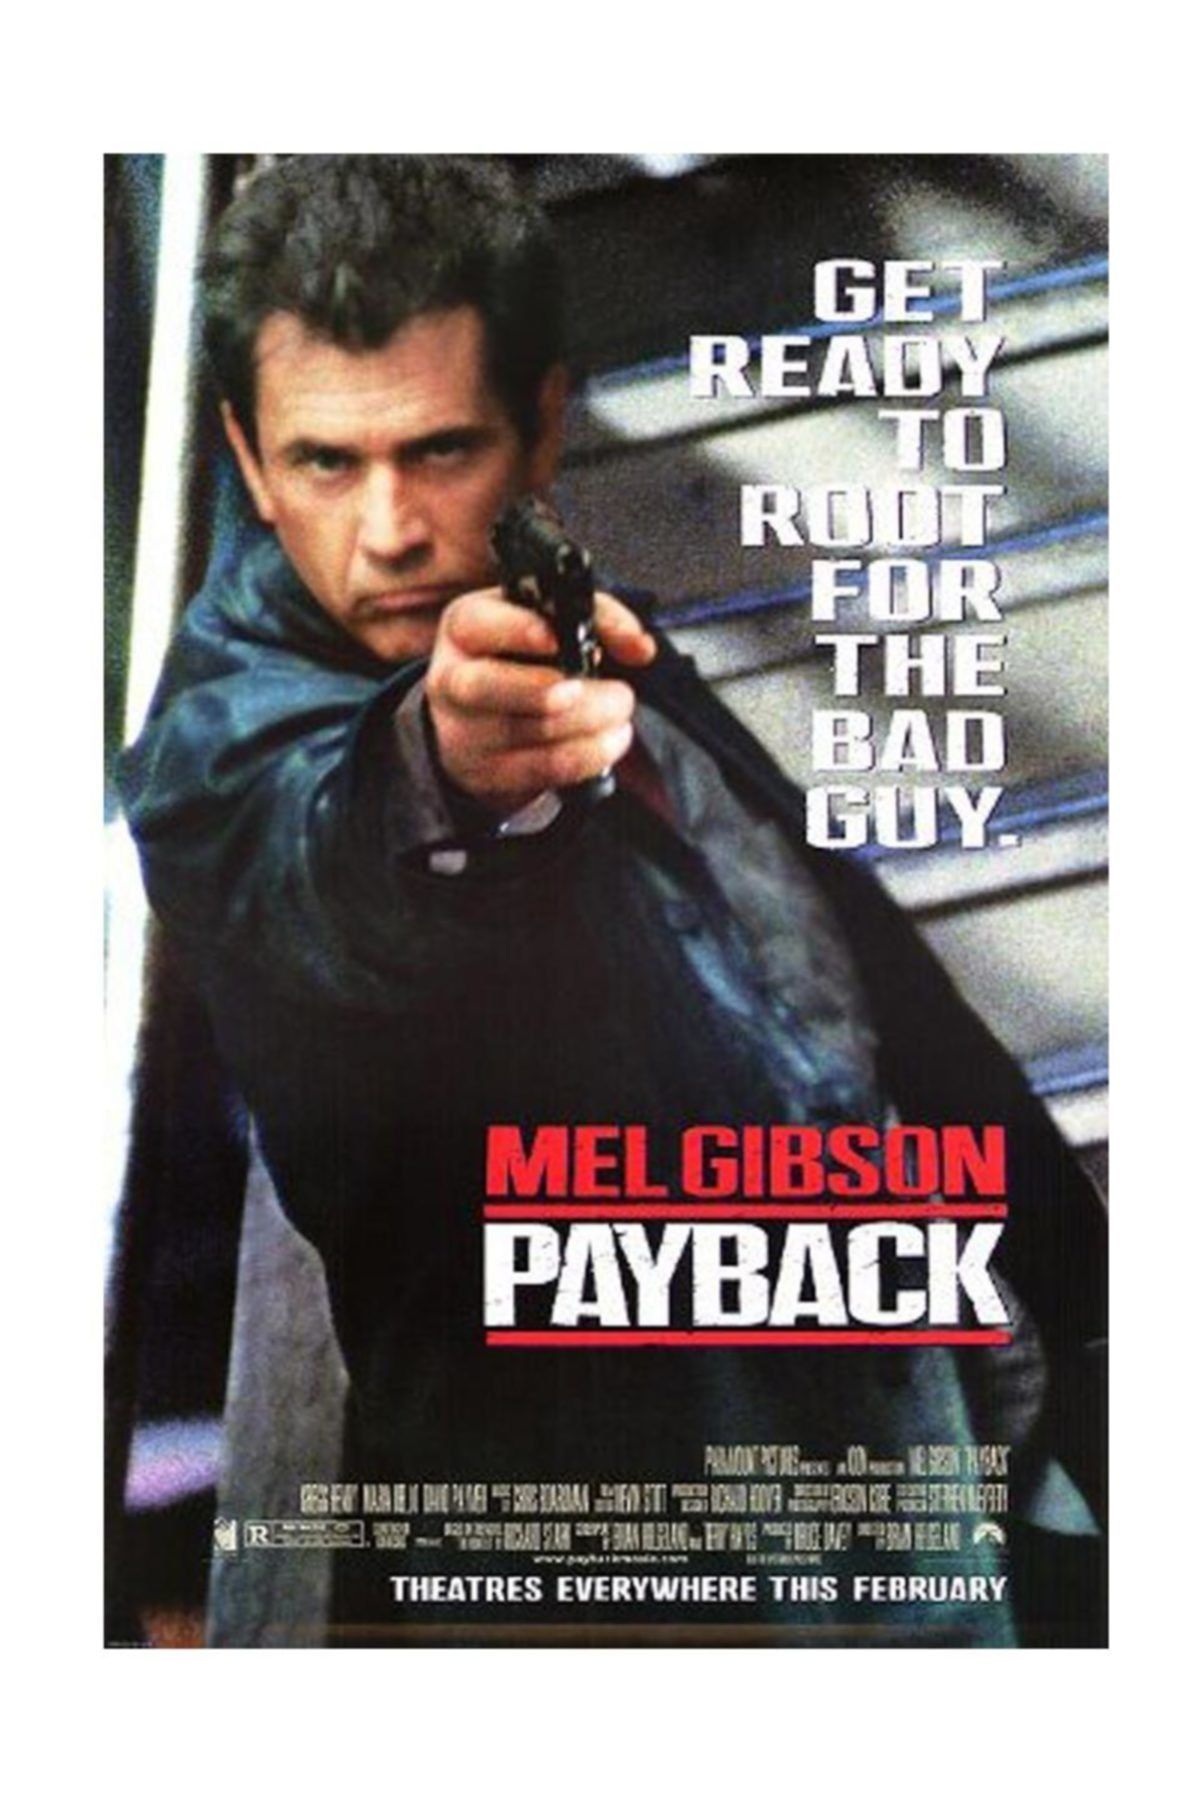 Payback (1999) 192Kbps 23.976Fps 48Khz 2.0Ch DigitalTV Turkish Audio TAC